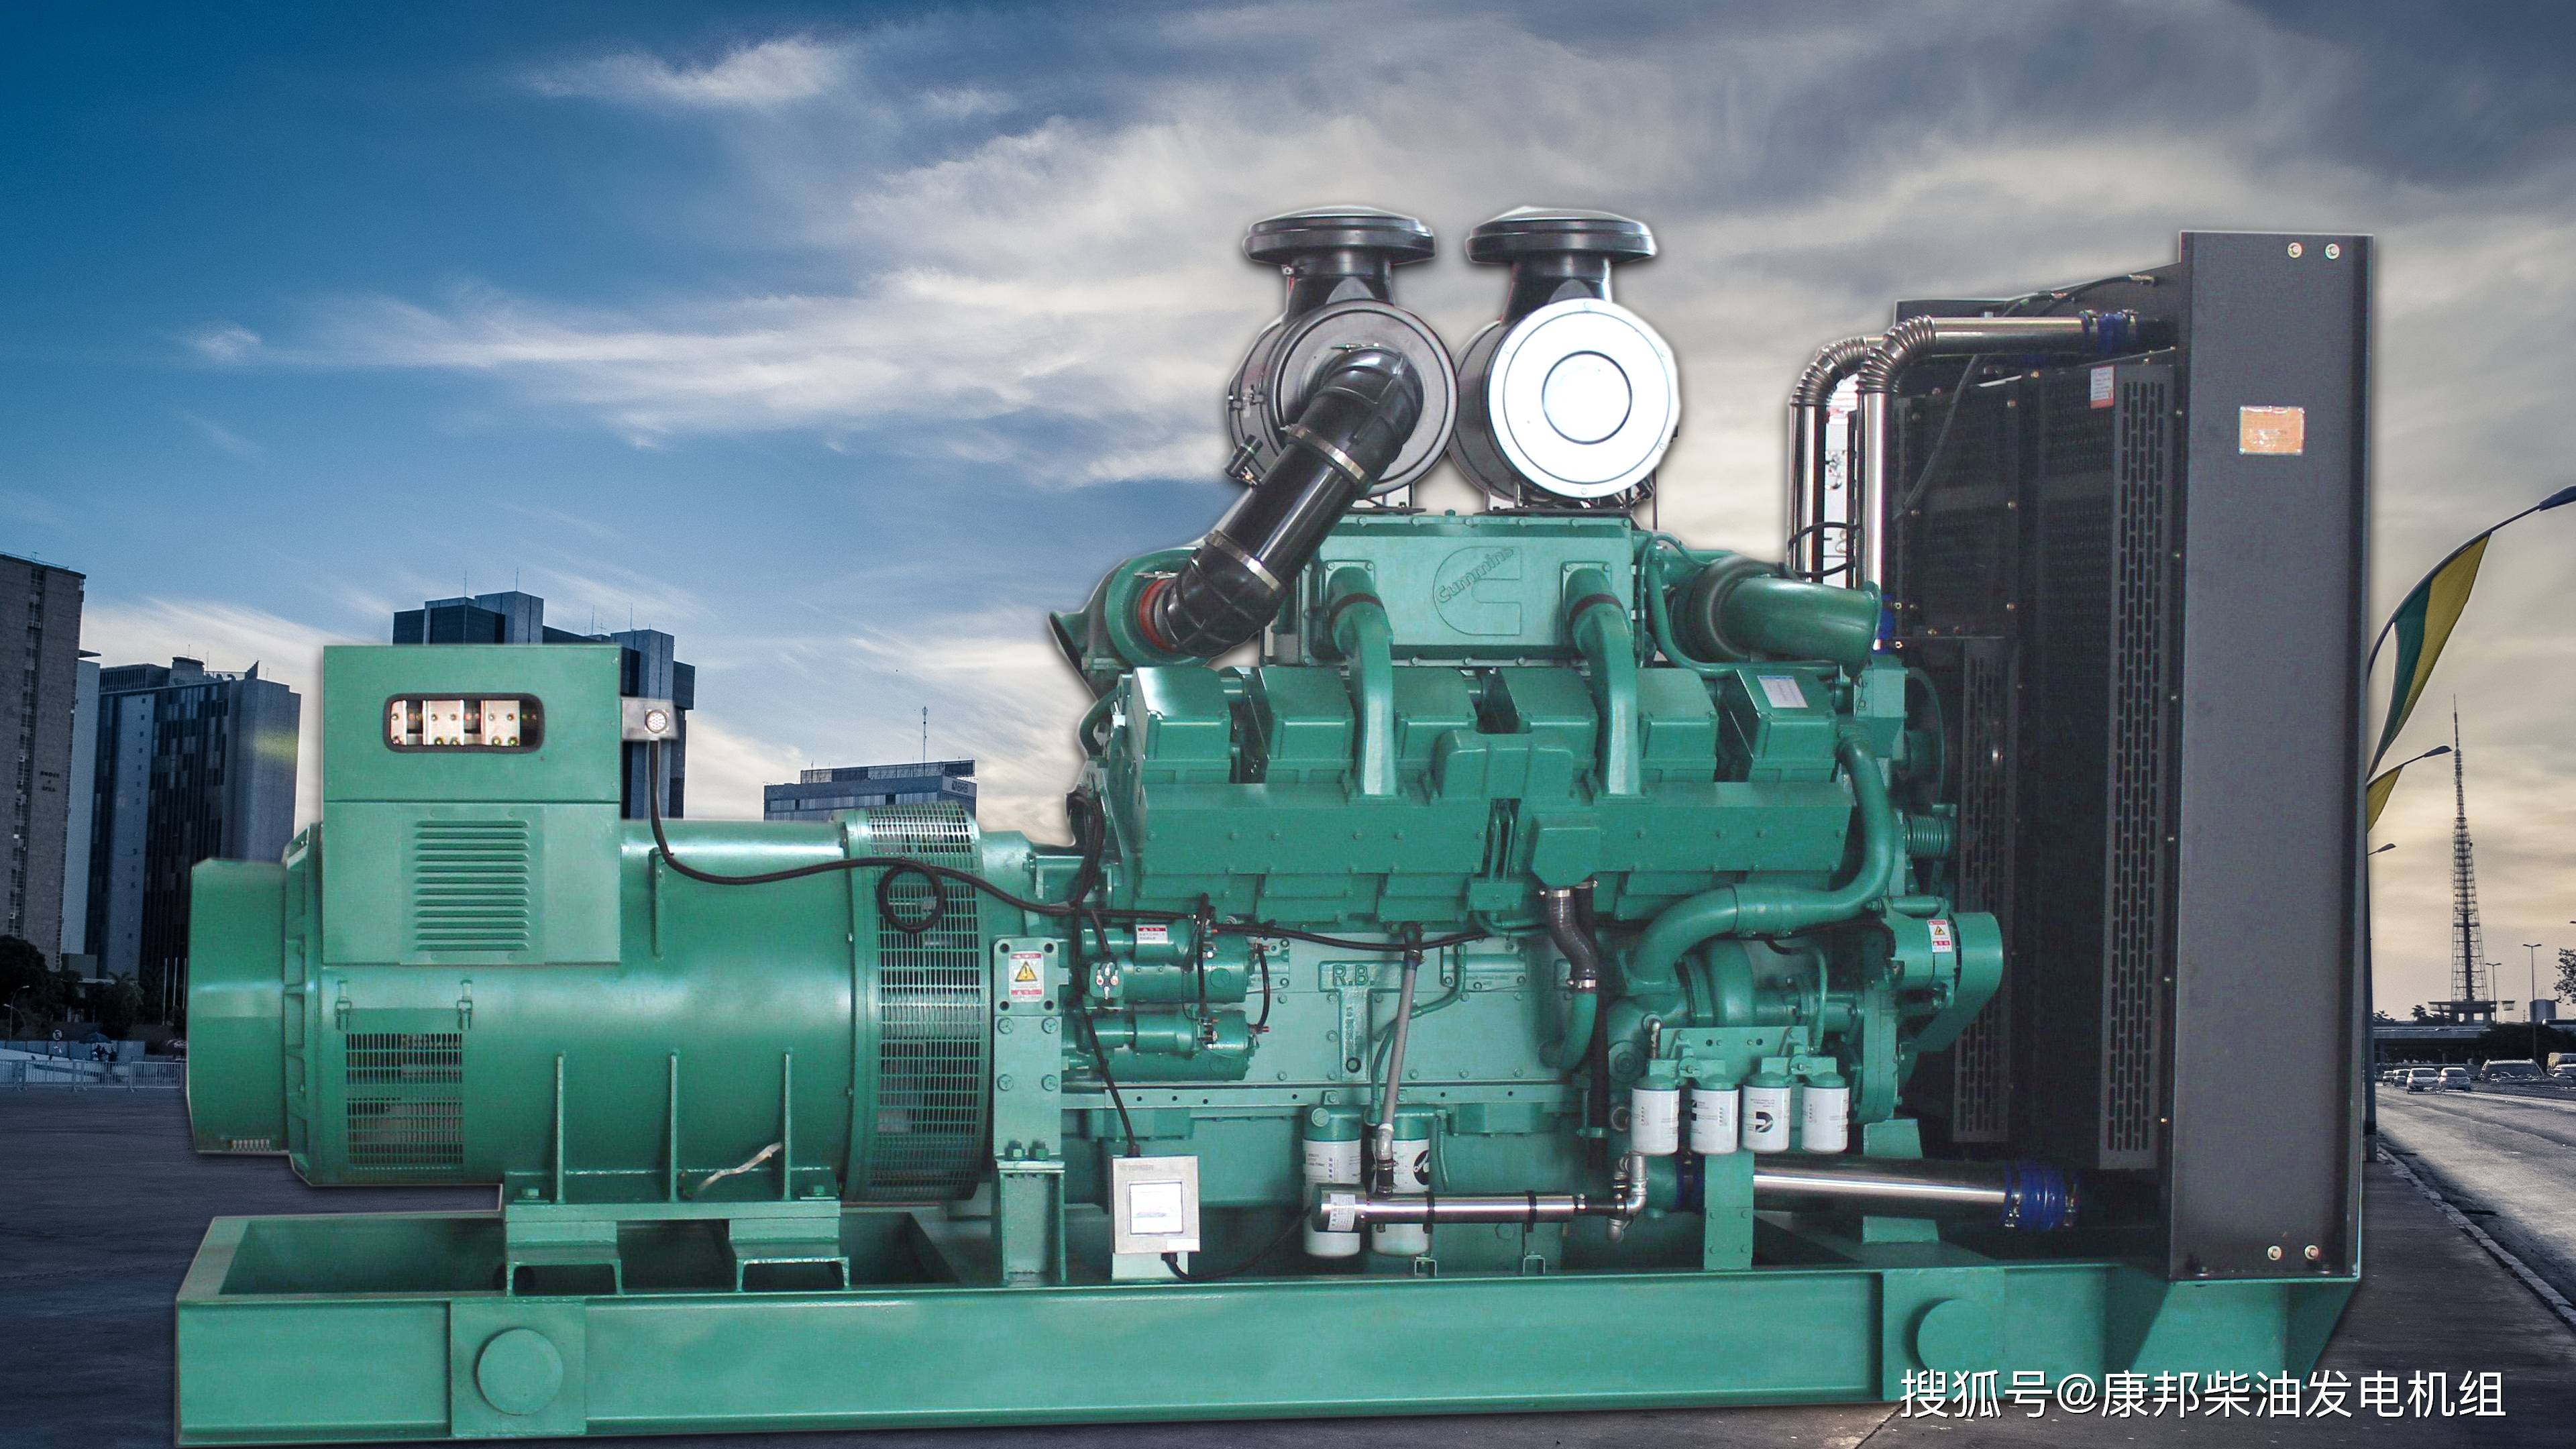 在夏季备用商用柴油发电机可保证基本业务和服务的企业拥有稳定可靠的